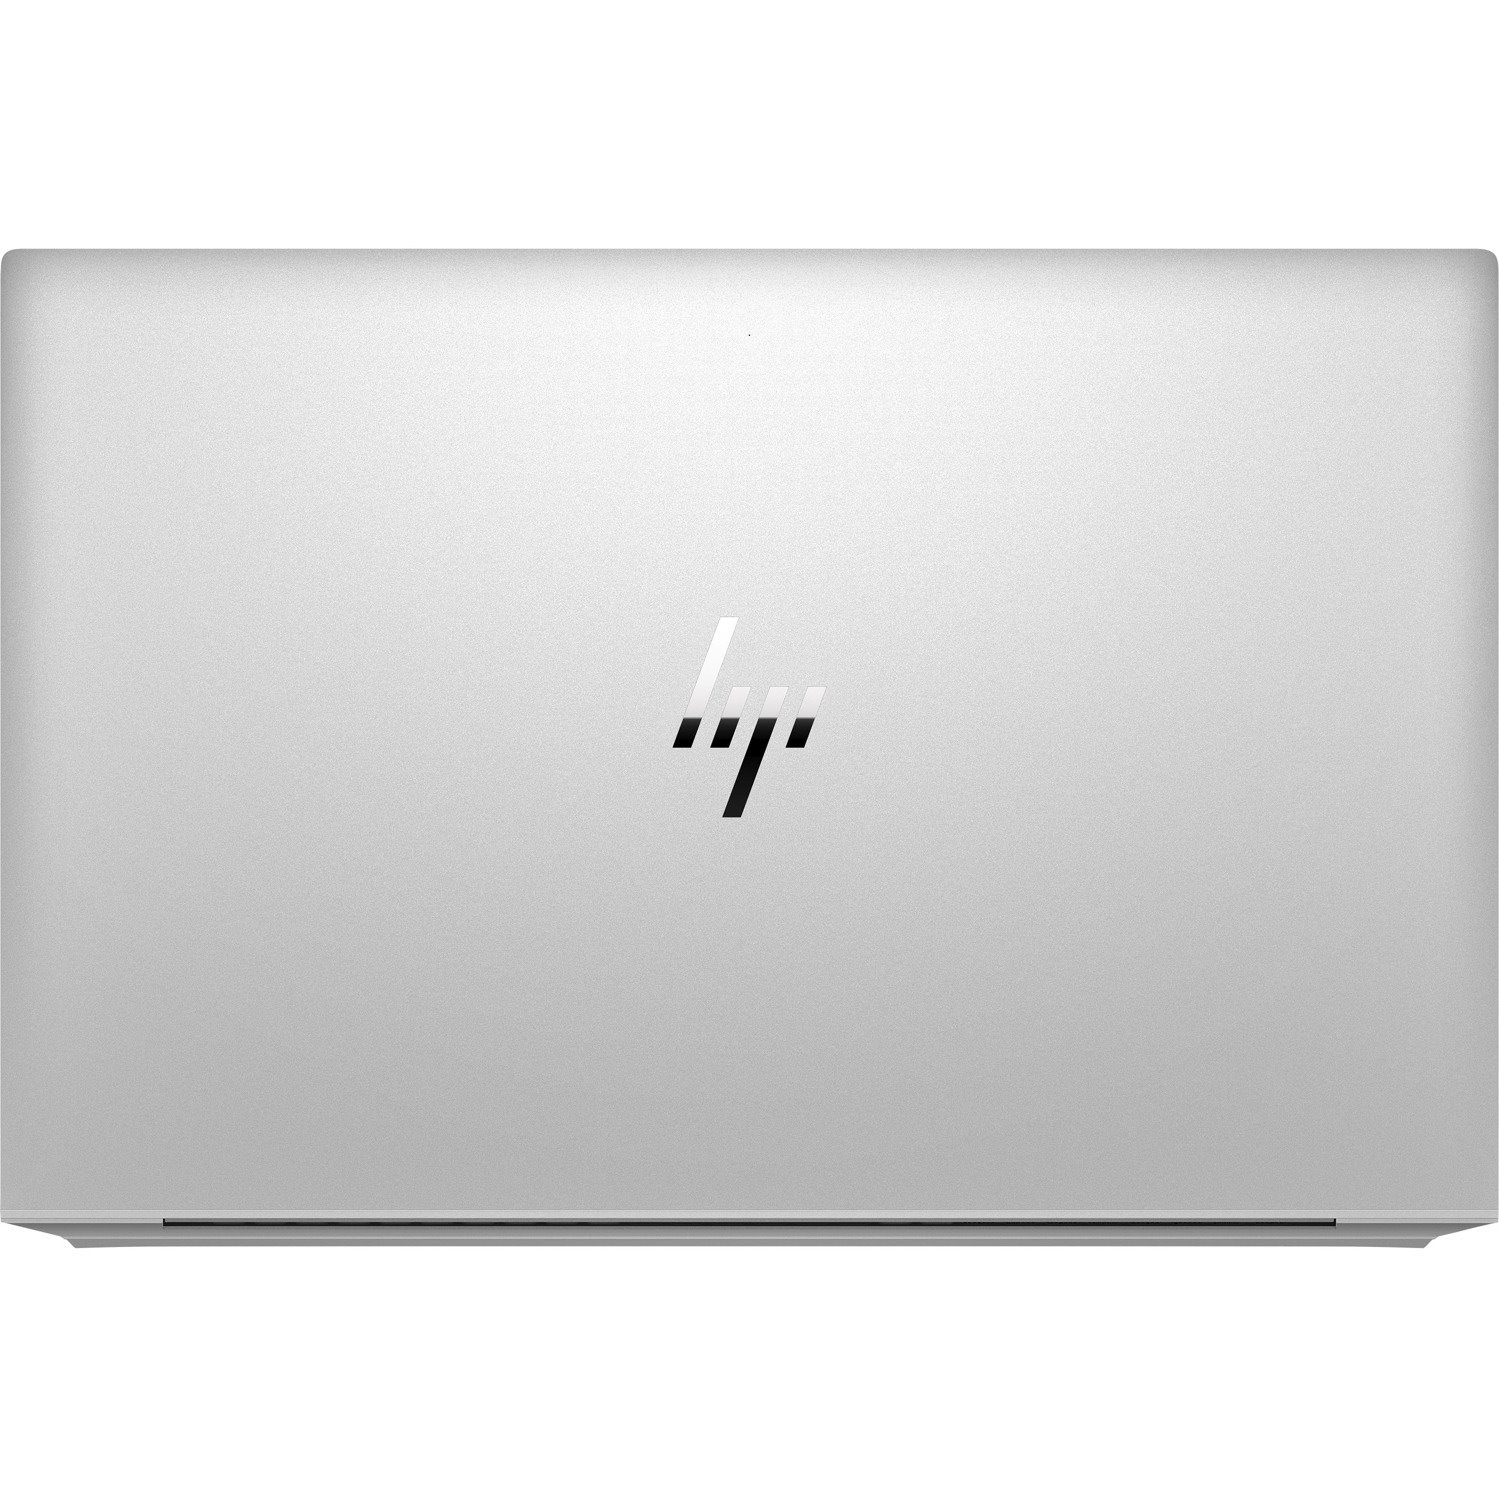 HP EliteBook 850 G7 15.6" Notebook - Intel Core i7 10th Gen i7-10510U Quad-core (4 Core) 1.80 GHz - 8 GB Total RAM - 256 GB SSD